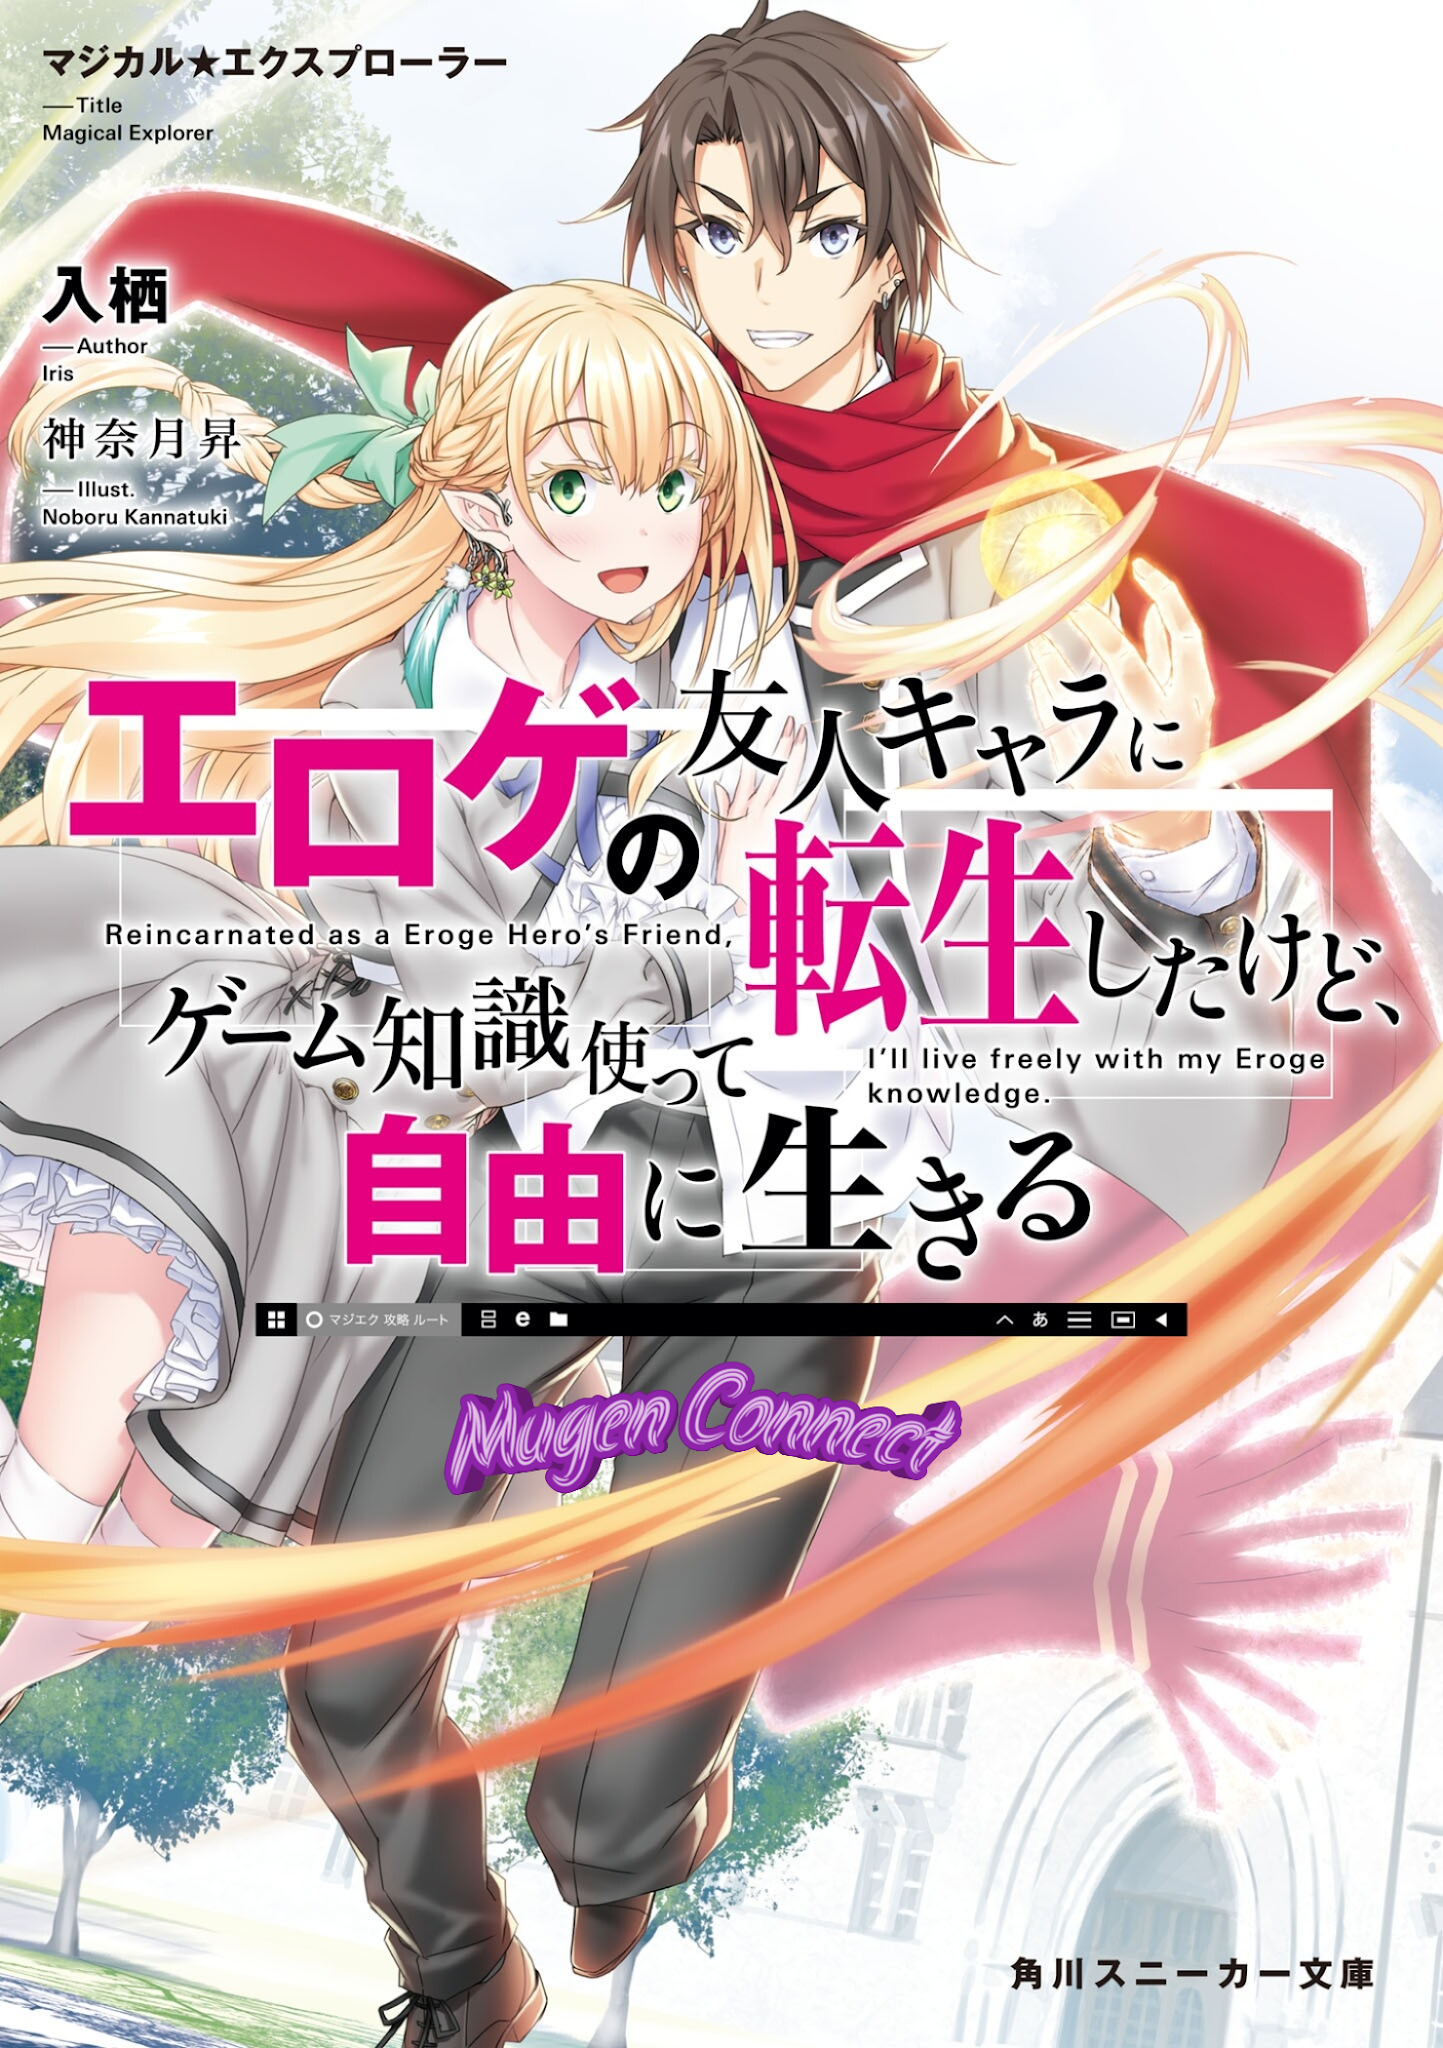 Light Novels mais vendidas (Maio 31 - Junho 06) - IntoxiAnime